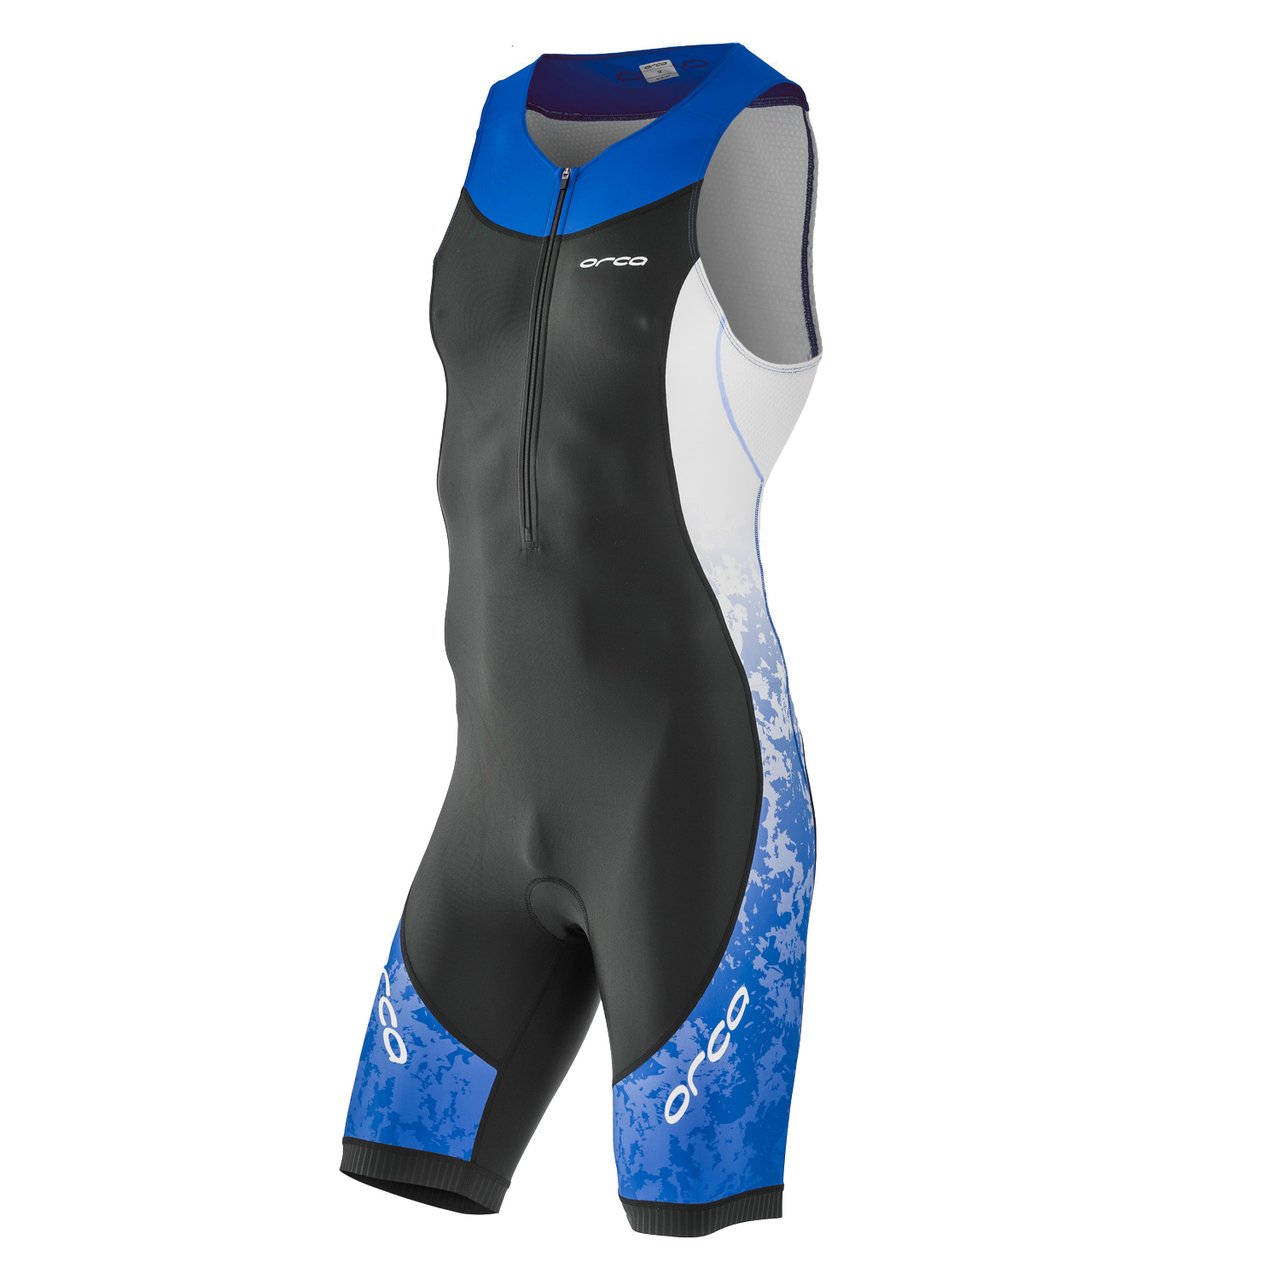 Комбинезон для триатлона Orca Core Race suit, 2018, M, черный/синий, HVC0 веломайка для триатлона orca 226 jersey 2018 женская s розовый hvdc